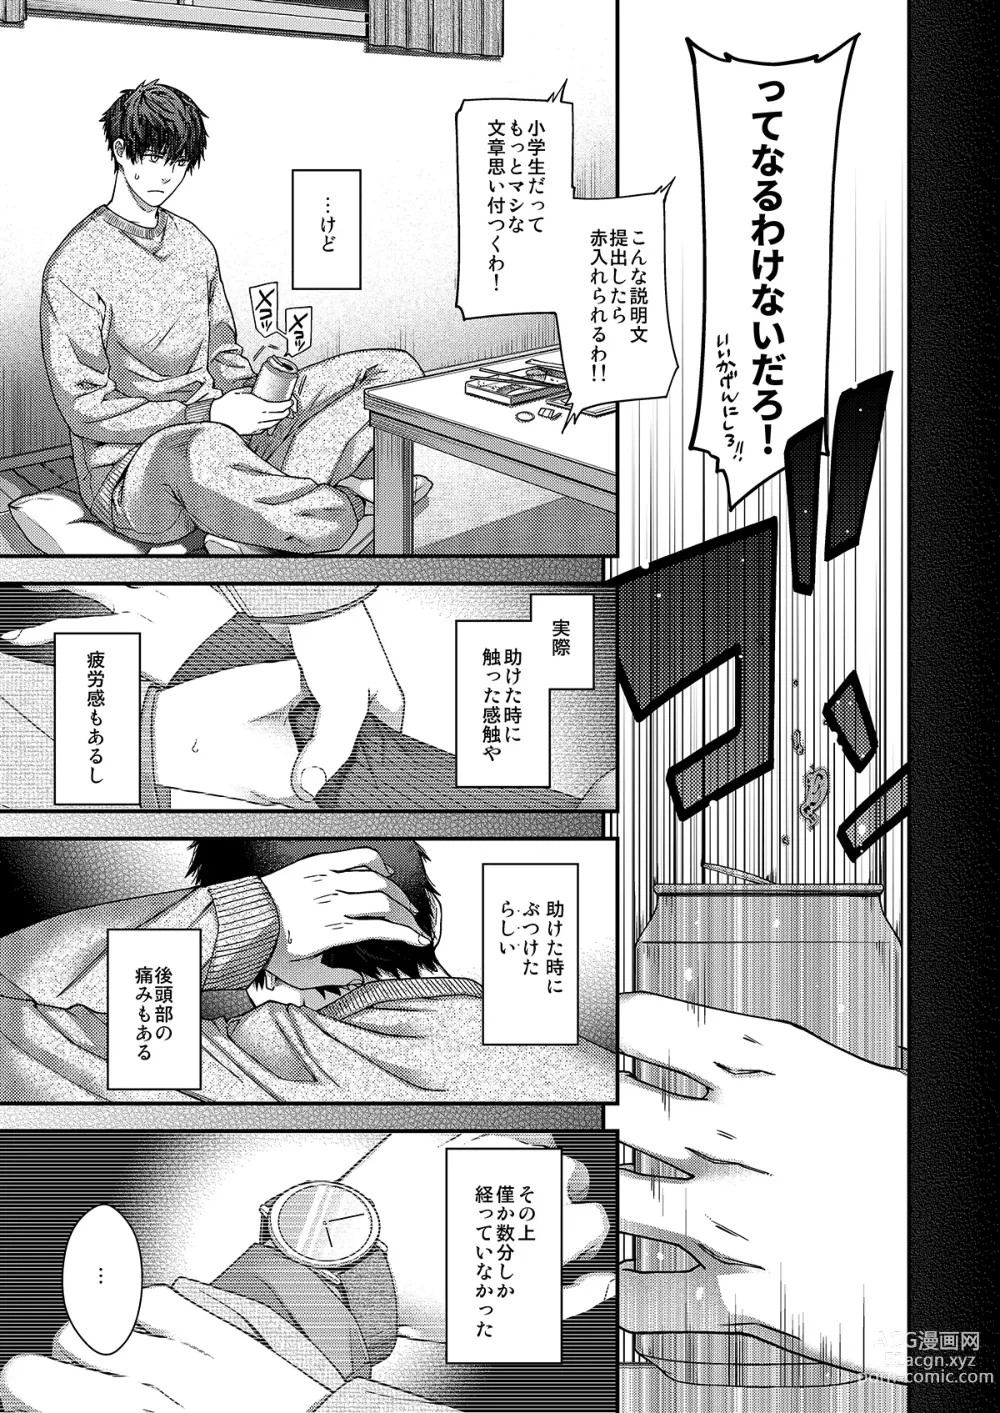 Page 4 of doujinshi Aikagi no Kemono 2